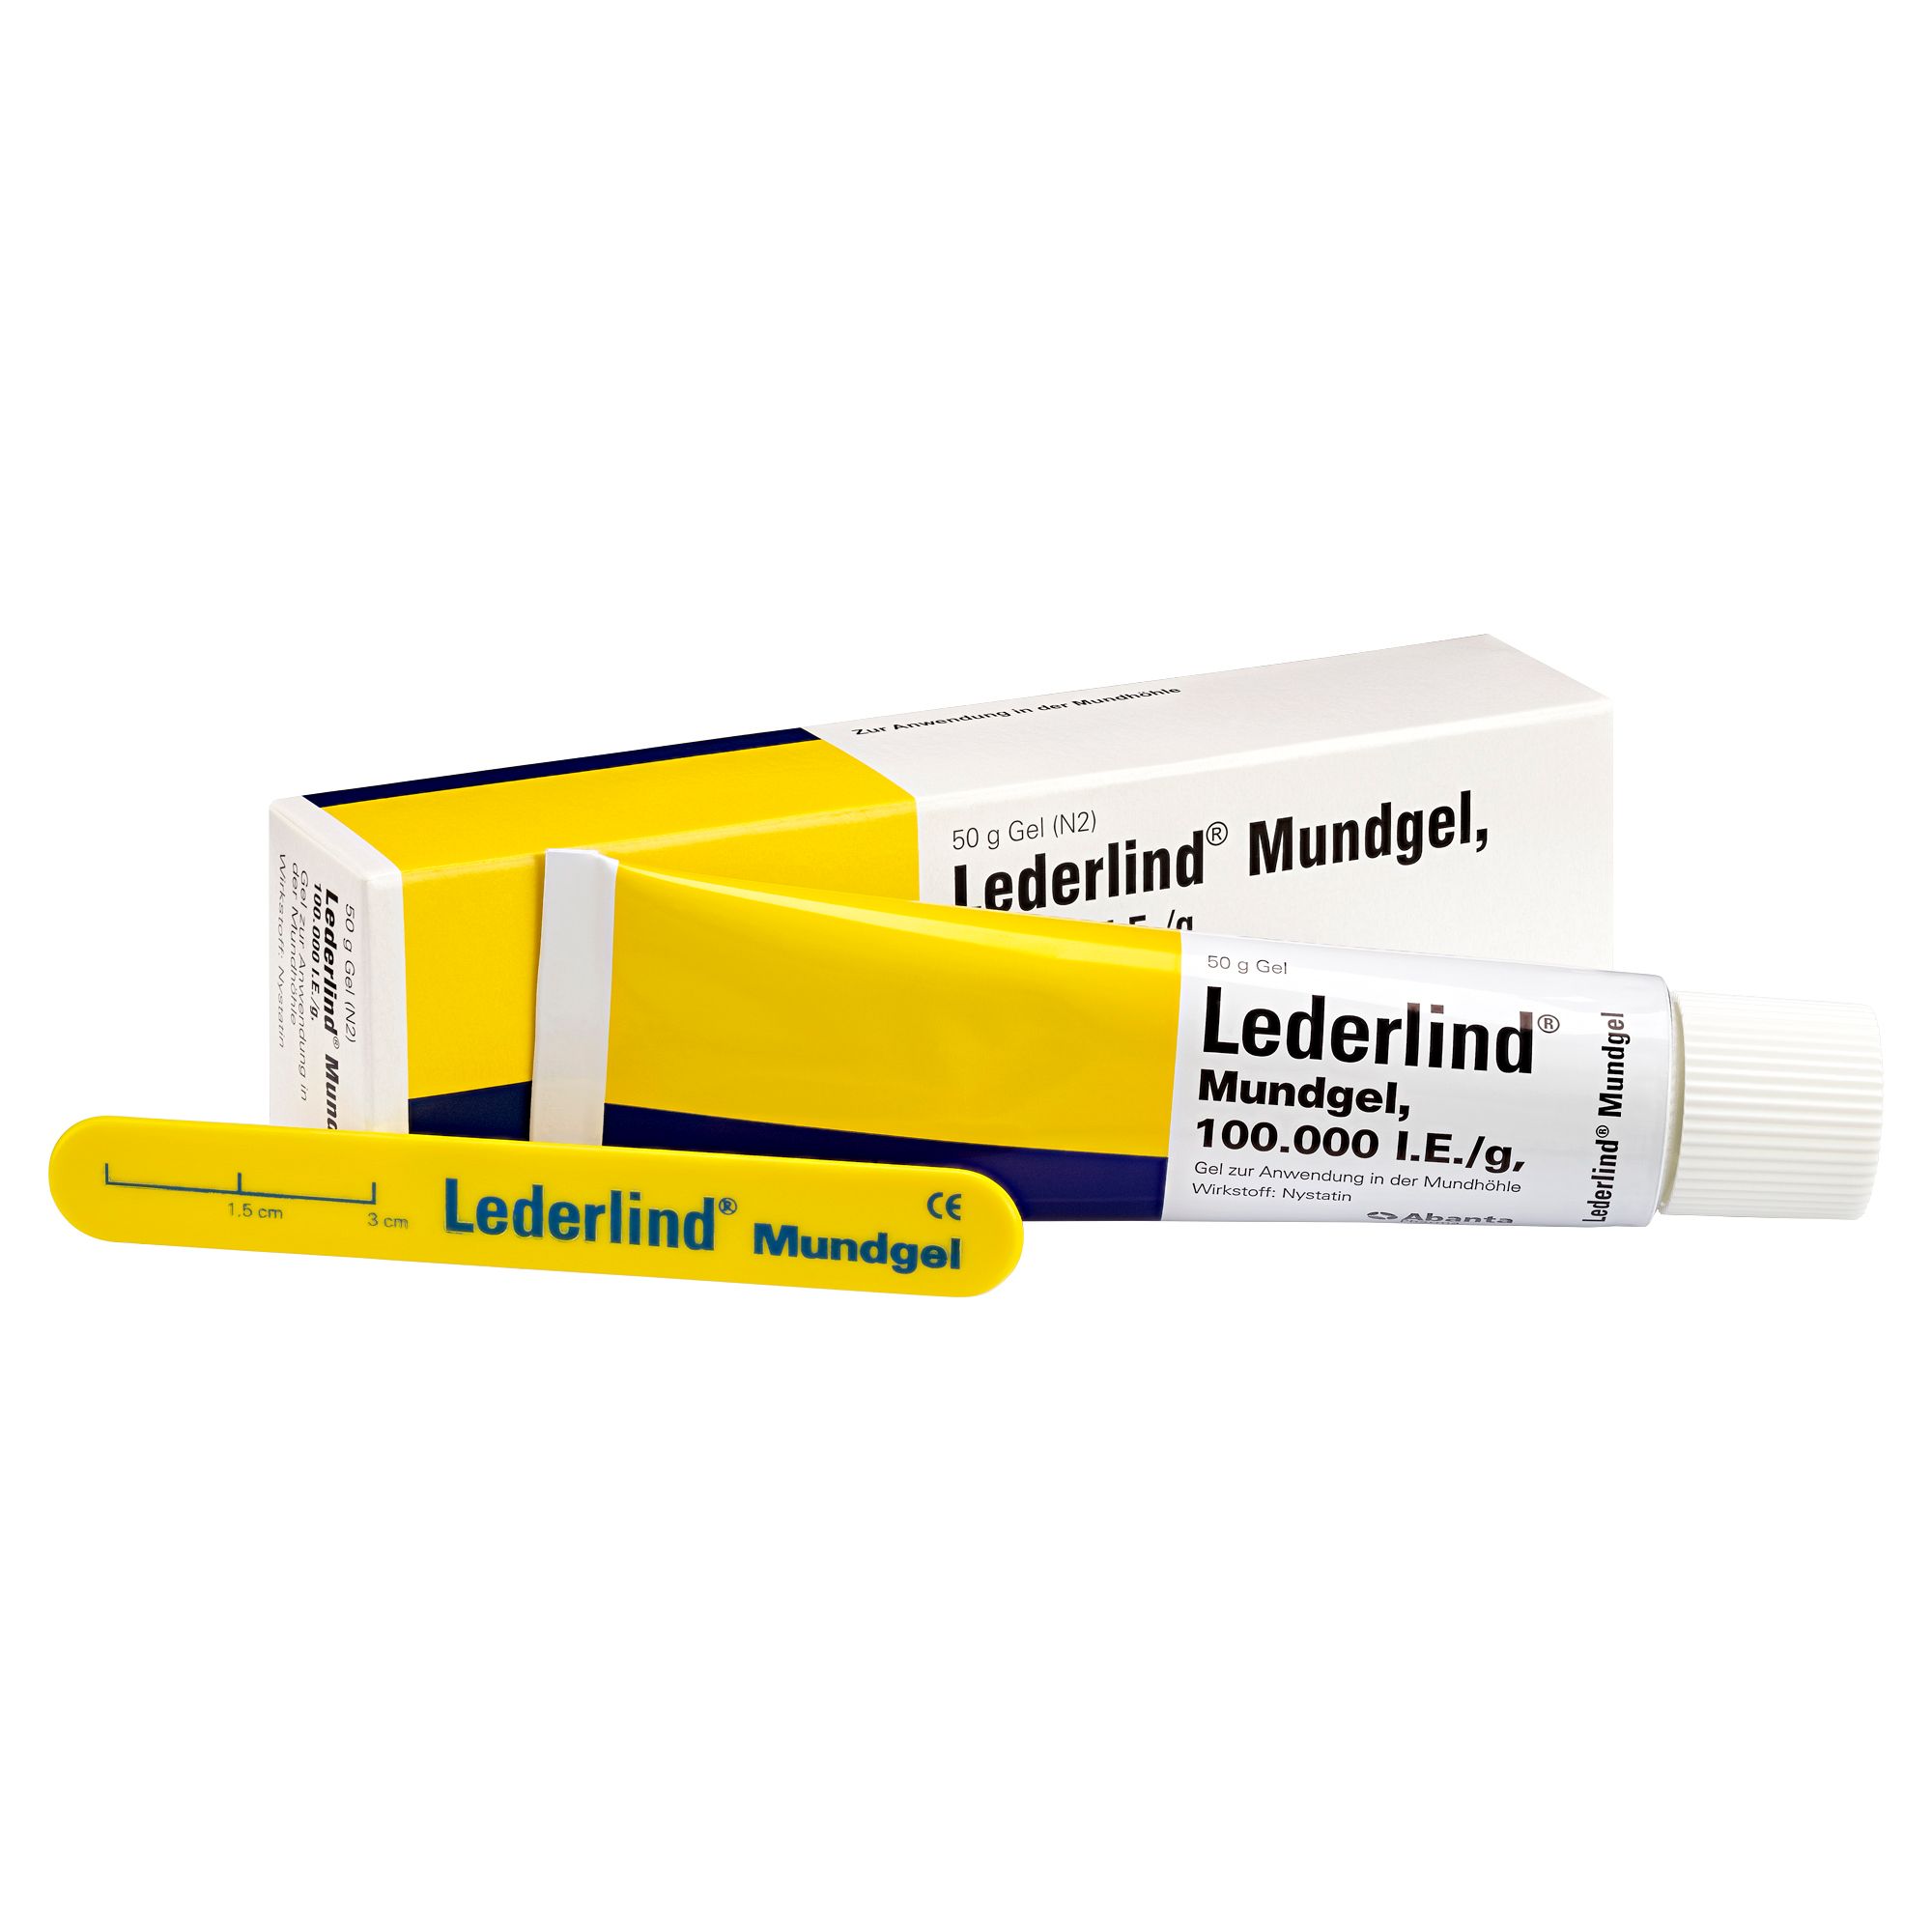 Lederlind® Mundgel